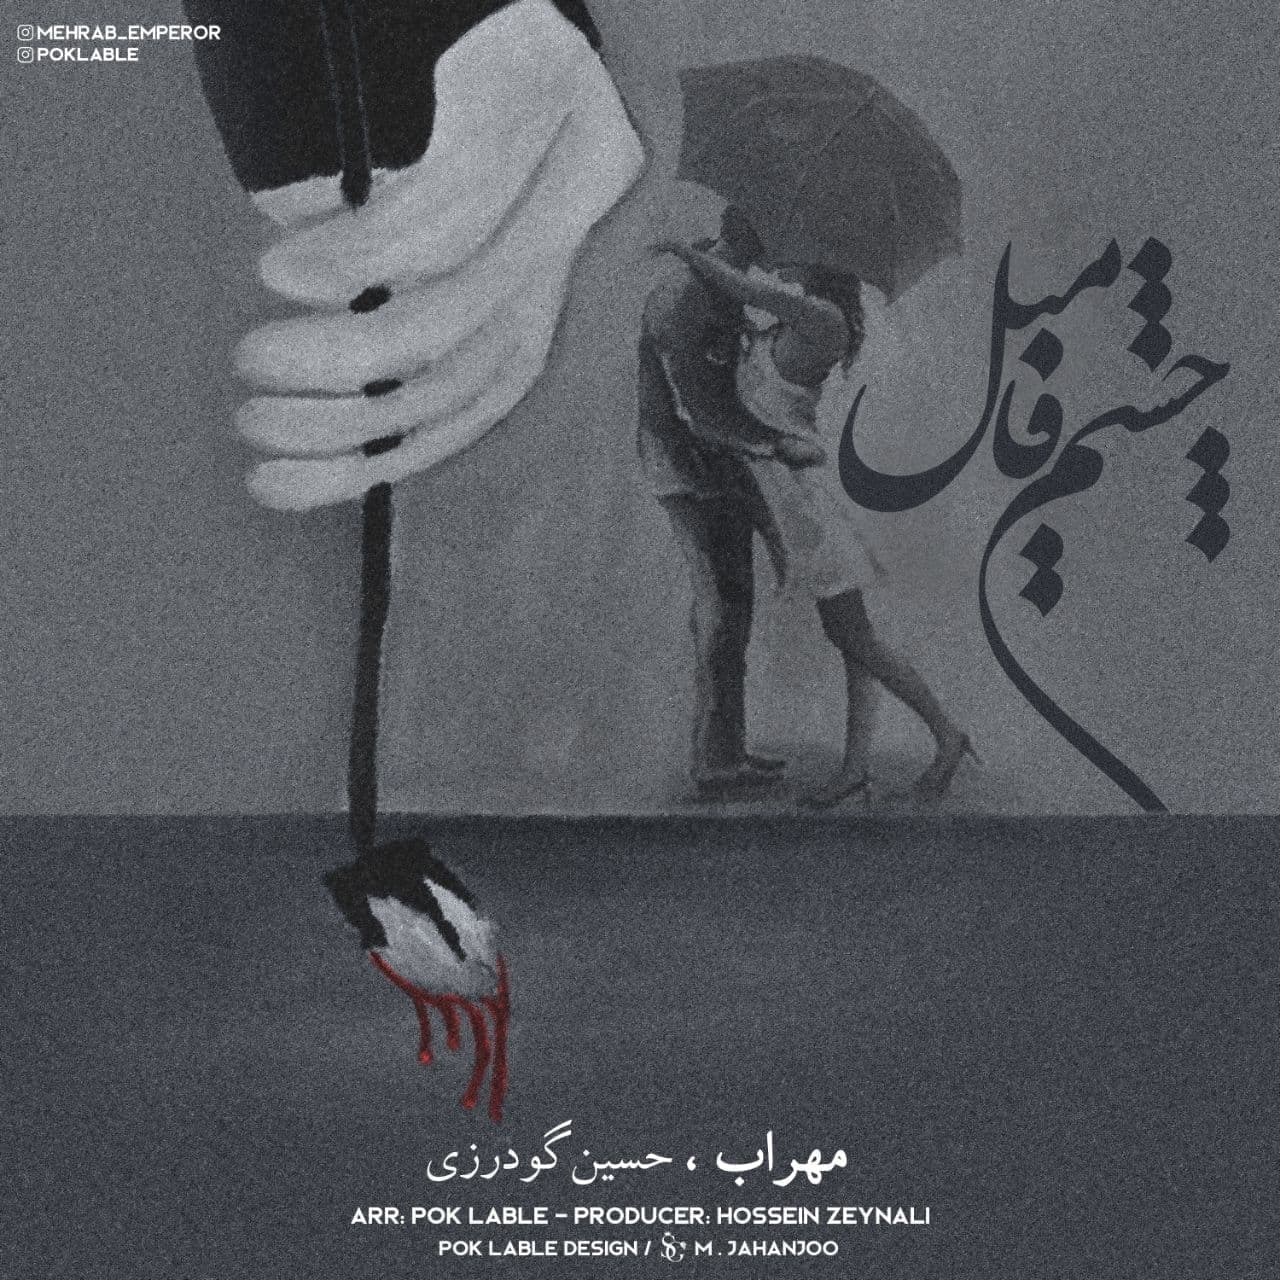  دانلود آهنگ جدید مهراب و حسین گودرزی - چشم فامیل | Download New Music By Mehrab - Cheshm,e Famil (feat. Hossein Gudarzi)